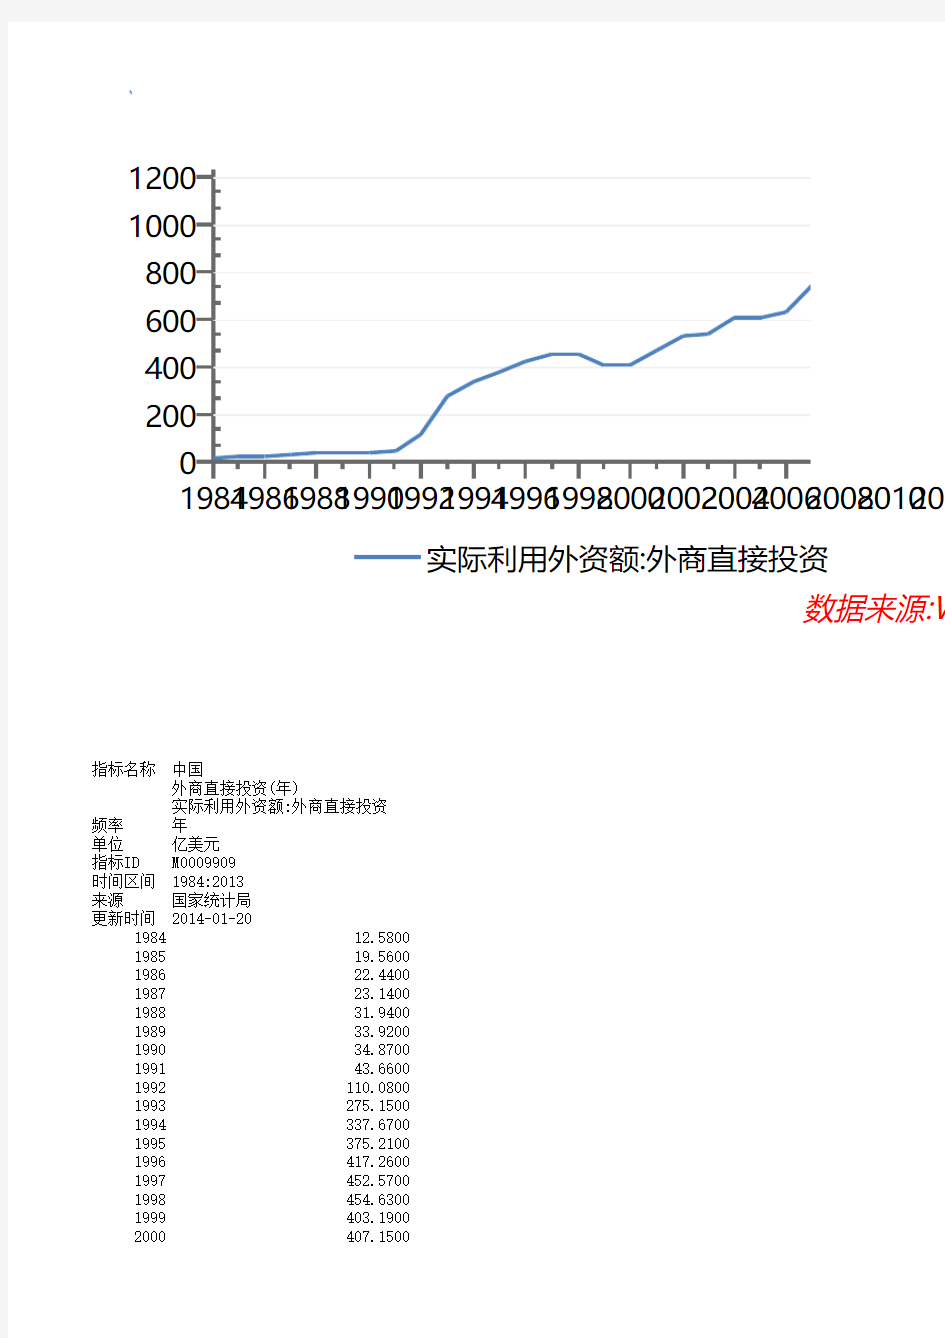 1984-2013历年中国实际利用外资额